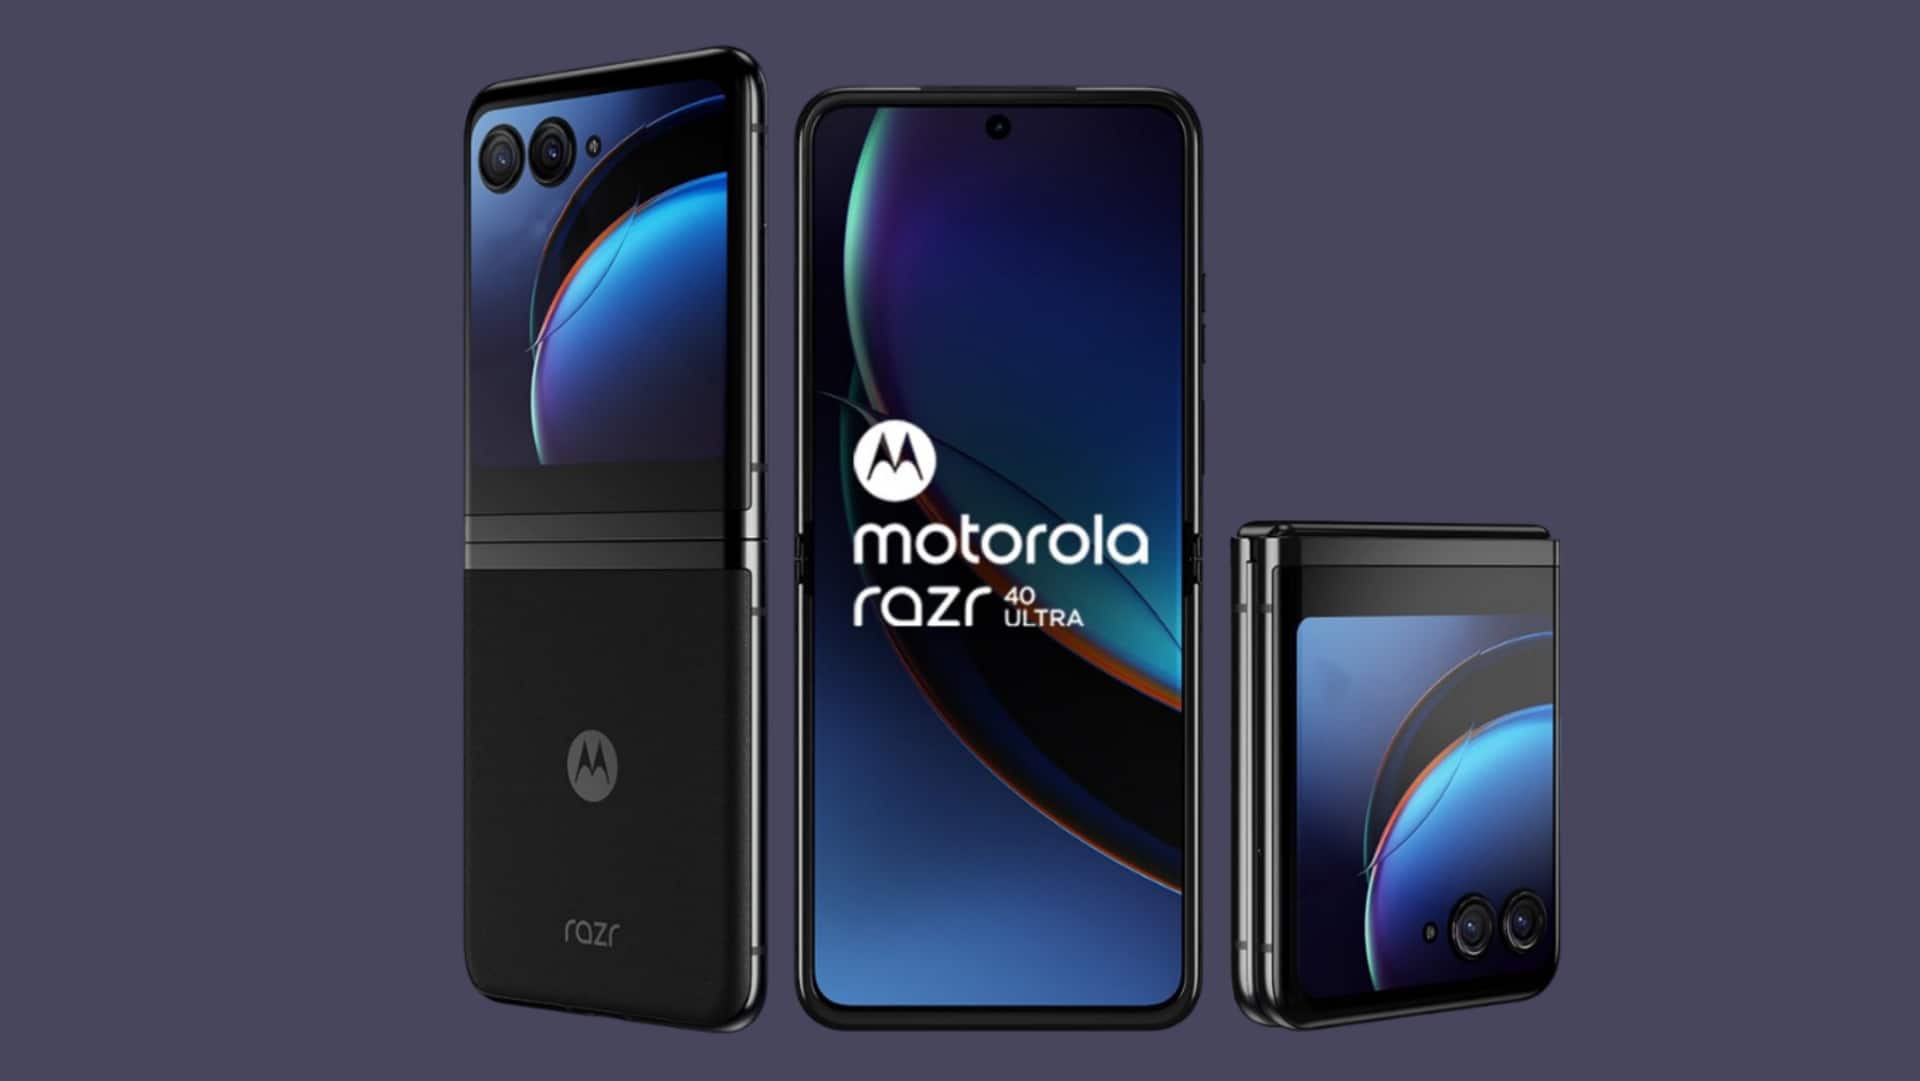 Motorola RAZR 40 Ultra's sale starts at midnight via Amazon